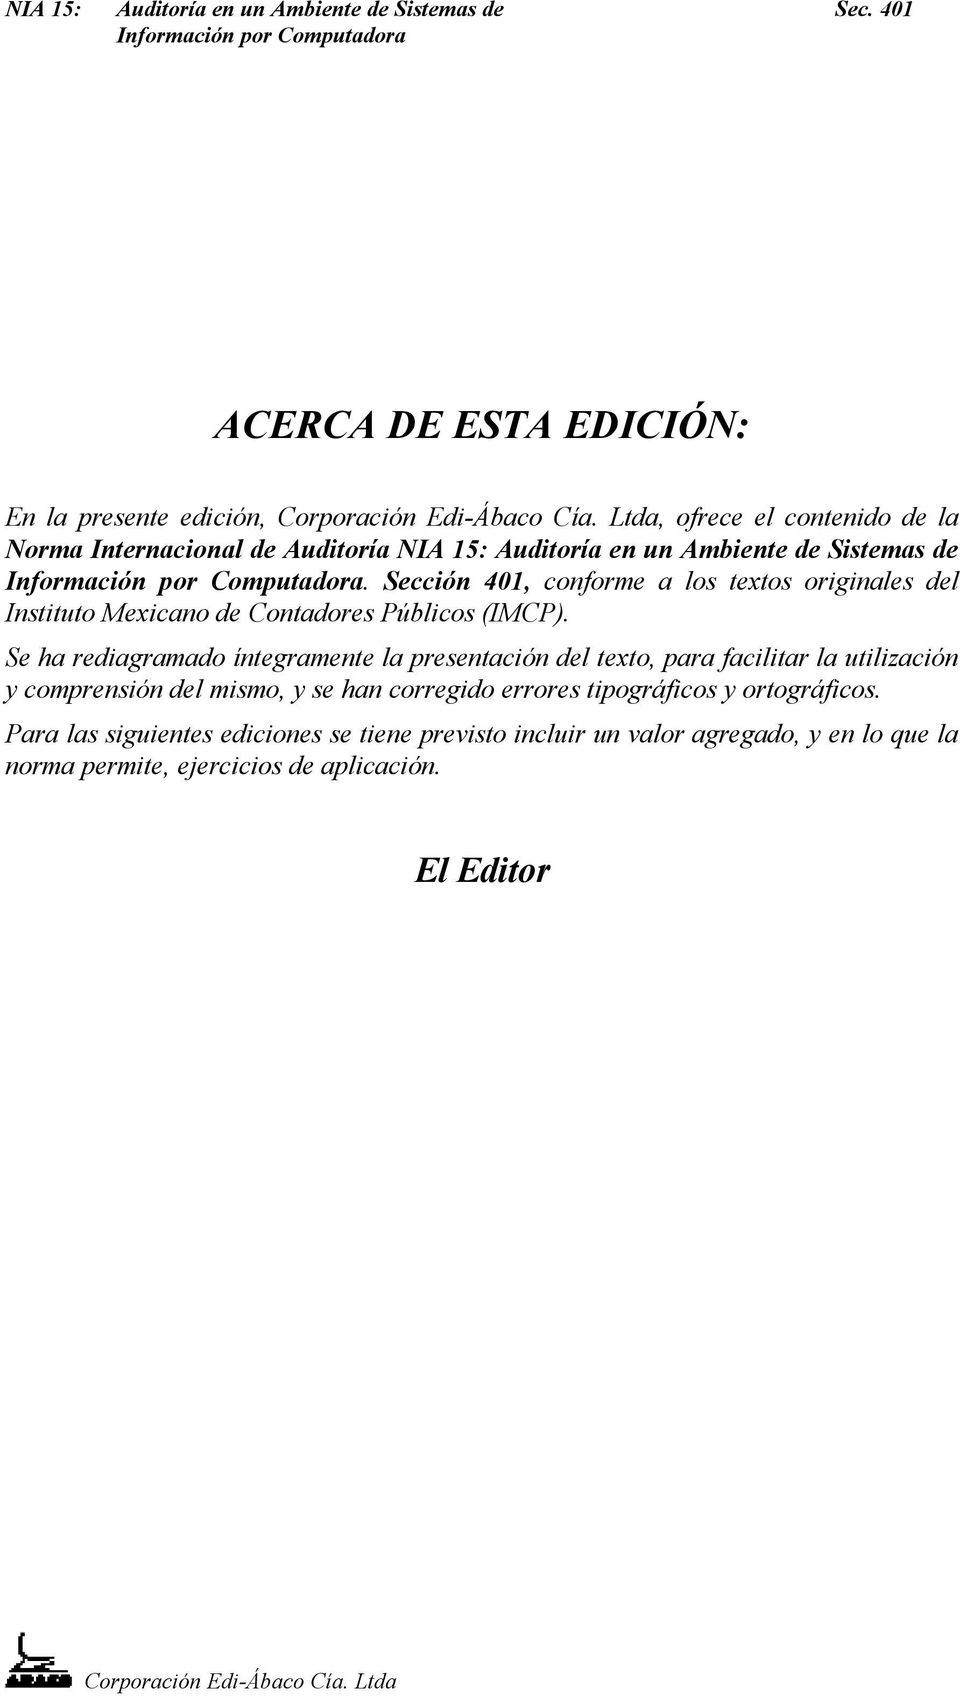 Sección 401, conforme a los textos originales del Instituto Mexicano de Contadores Públicos (IMCP).